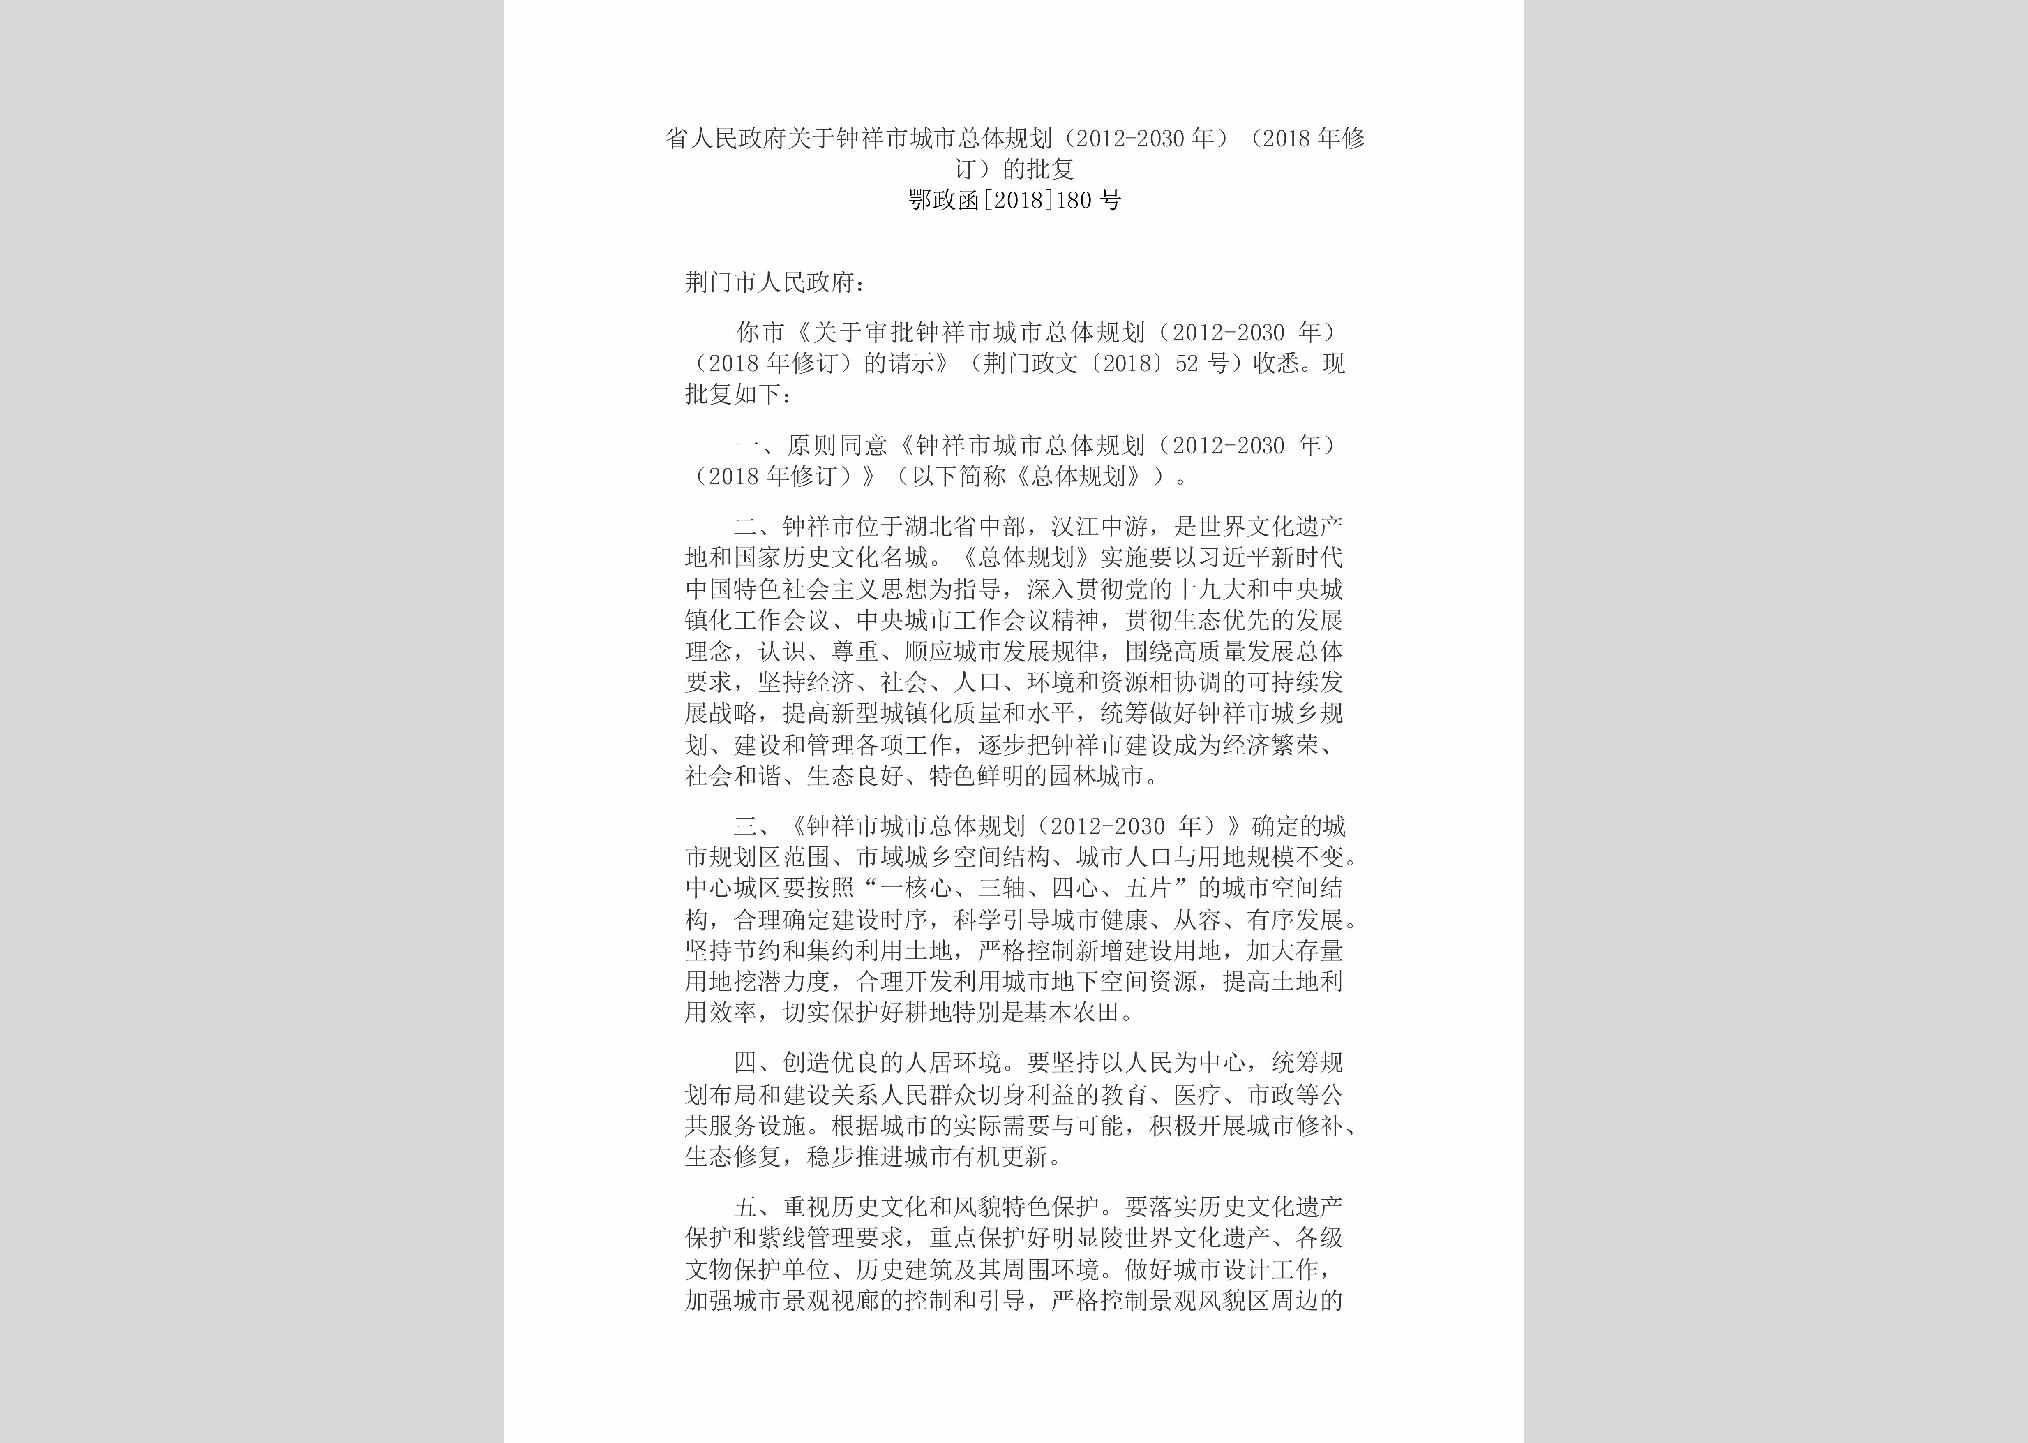 鄂政函[2018]180号：省人民政府关于
钟祥市城市总体规划（2012-2030年）
（2018年修订）的批复